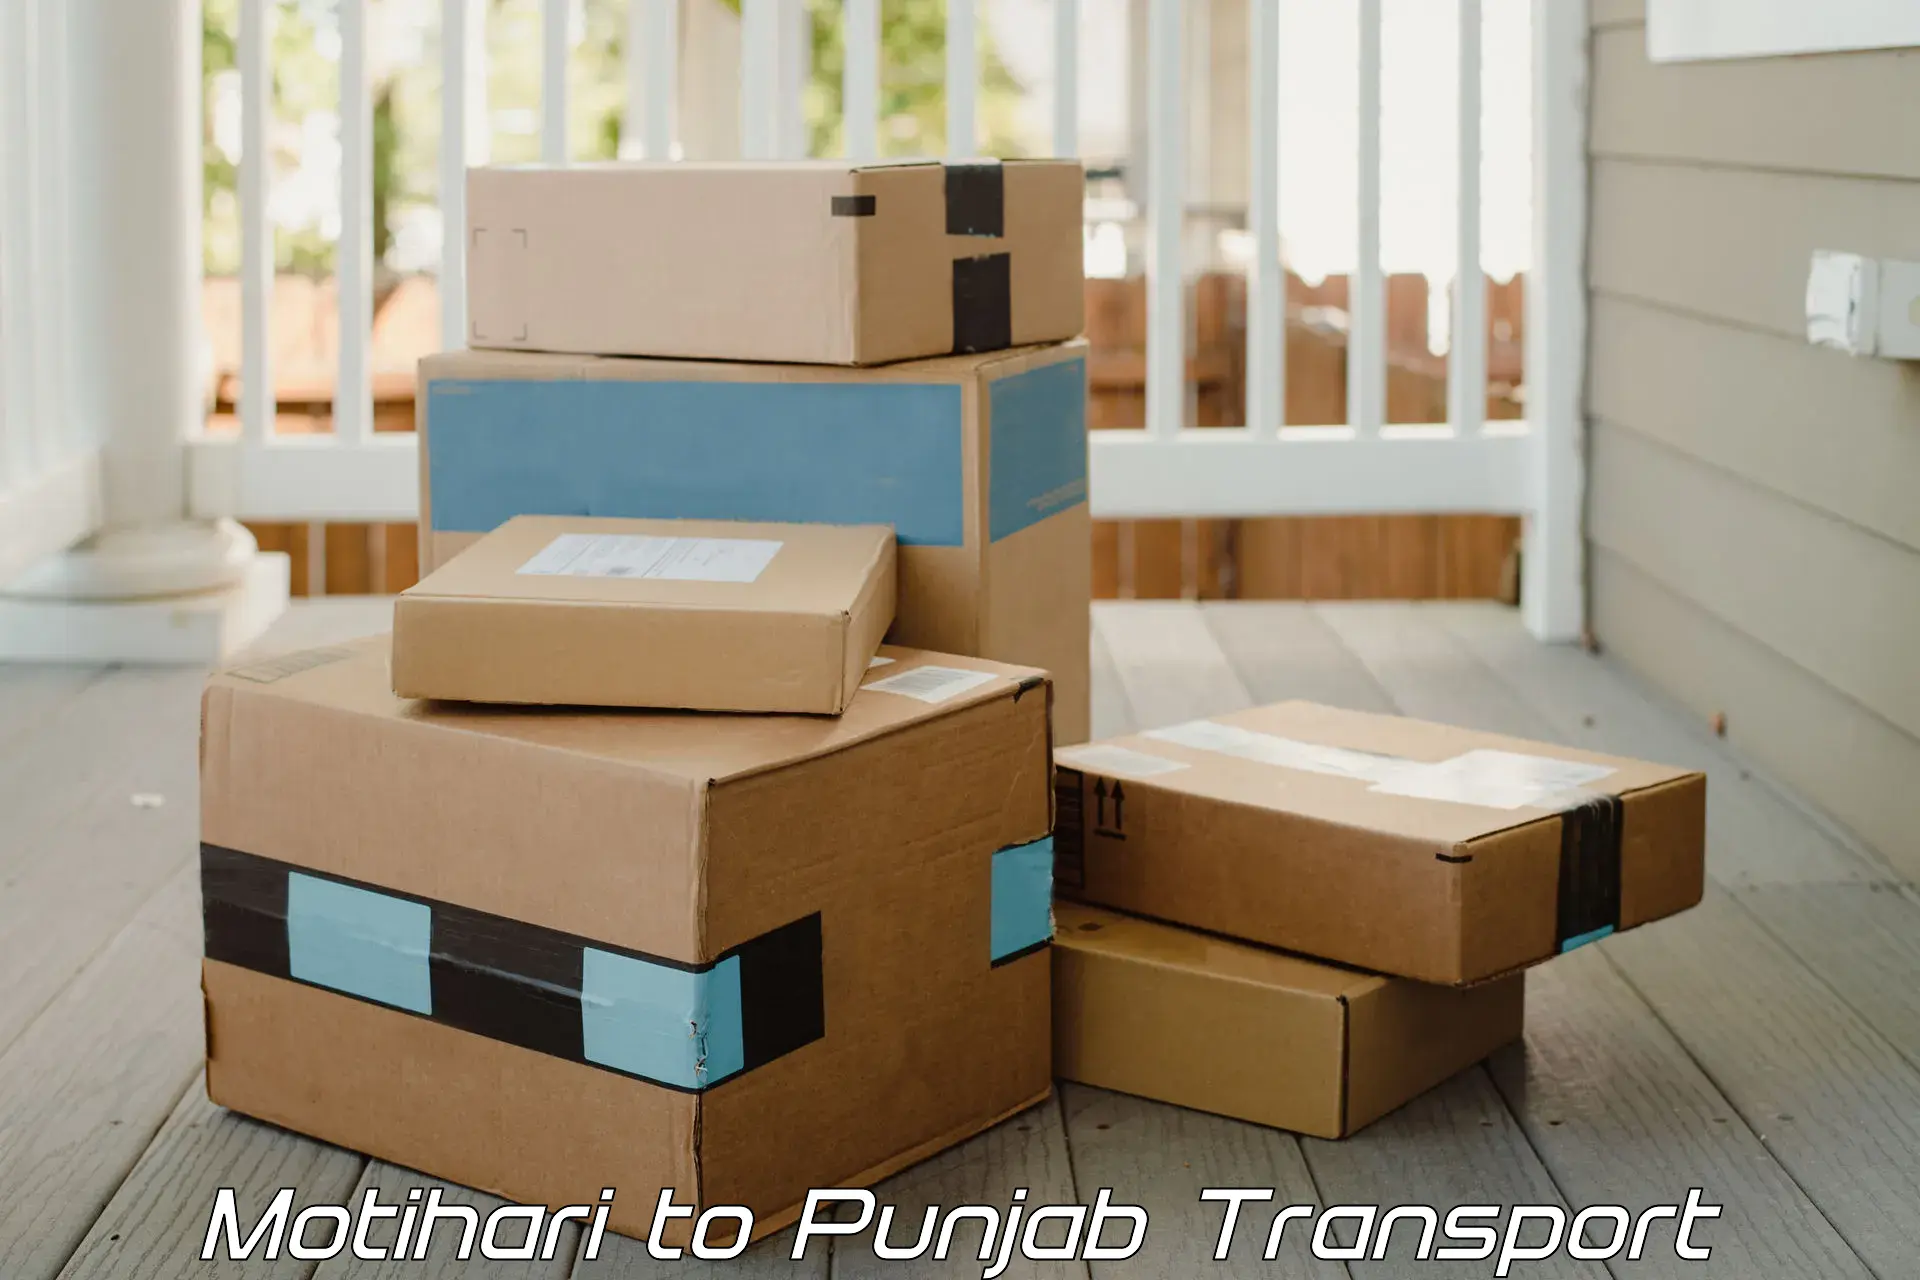 Online transport service Motihari to Punjab